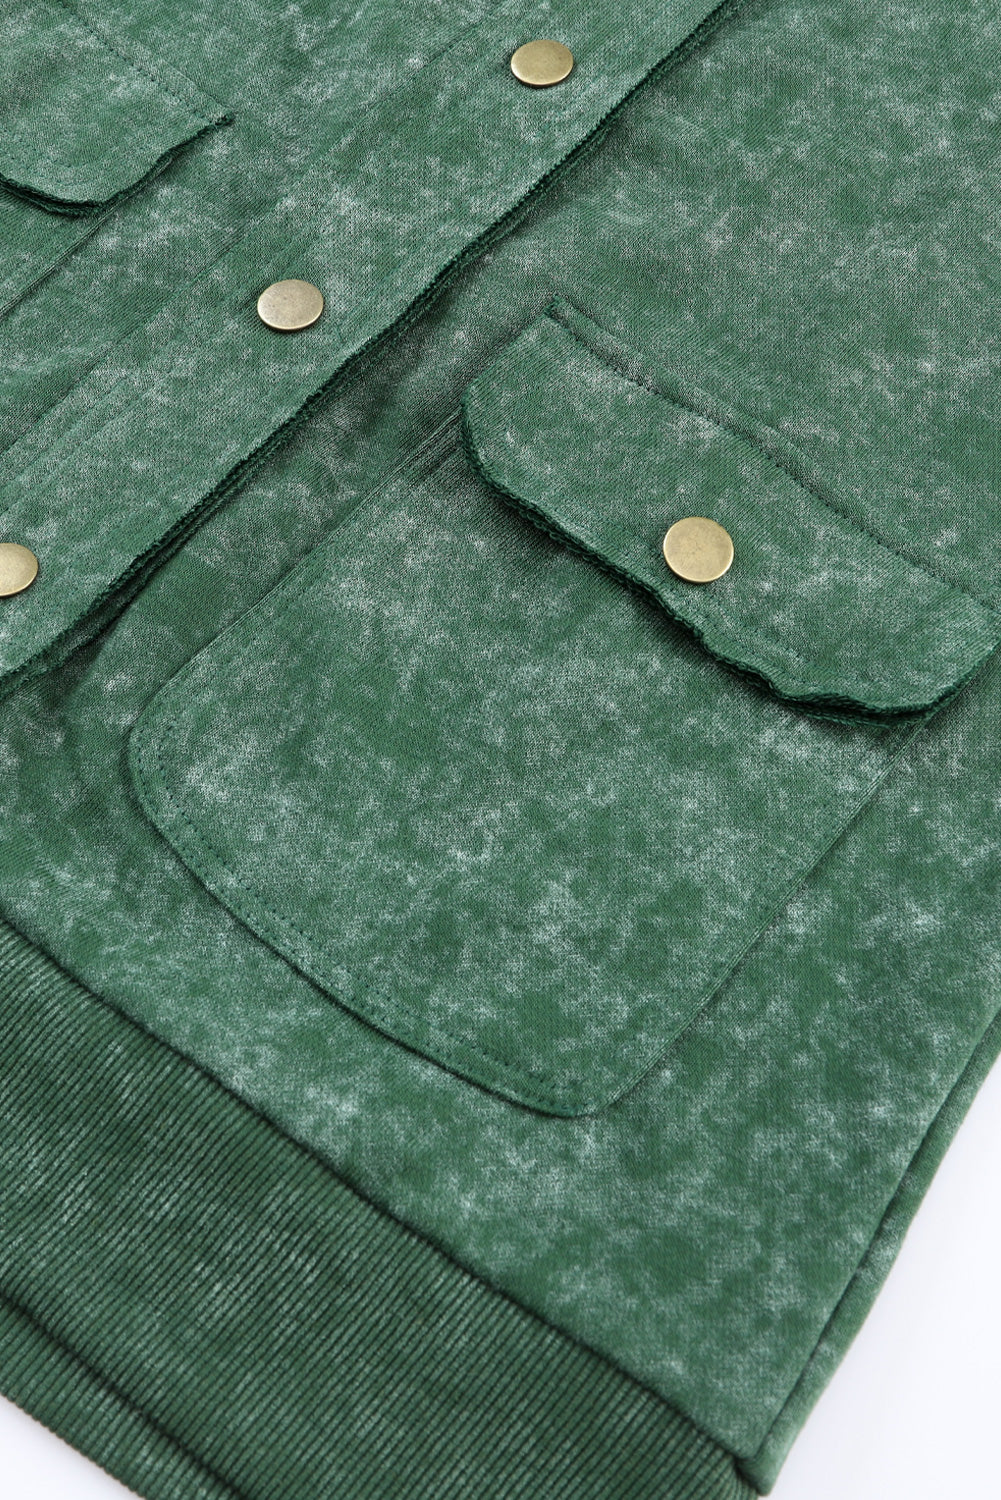 Veste boutonnée verte vintage délavée avec poche à rabat